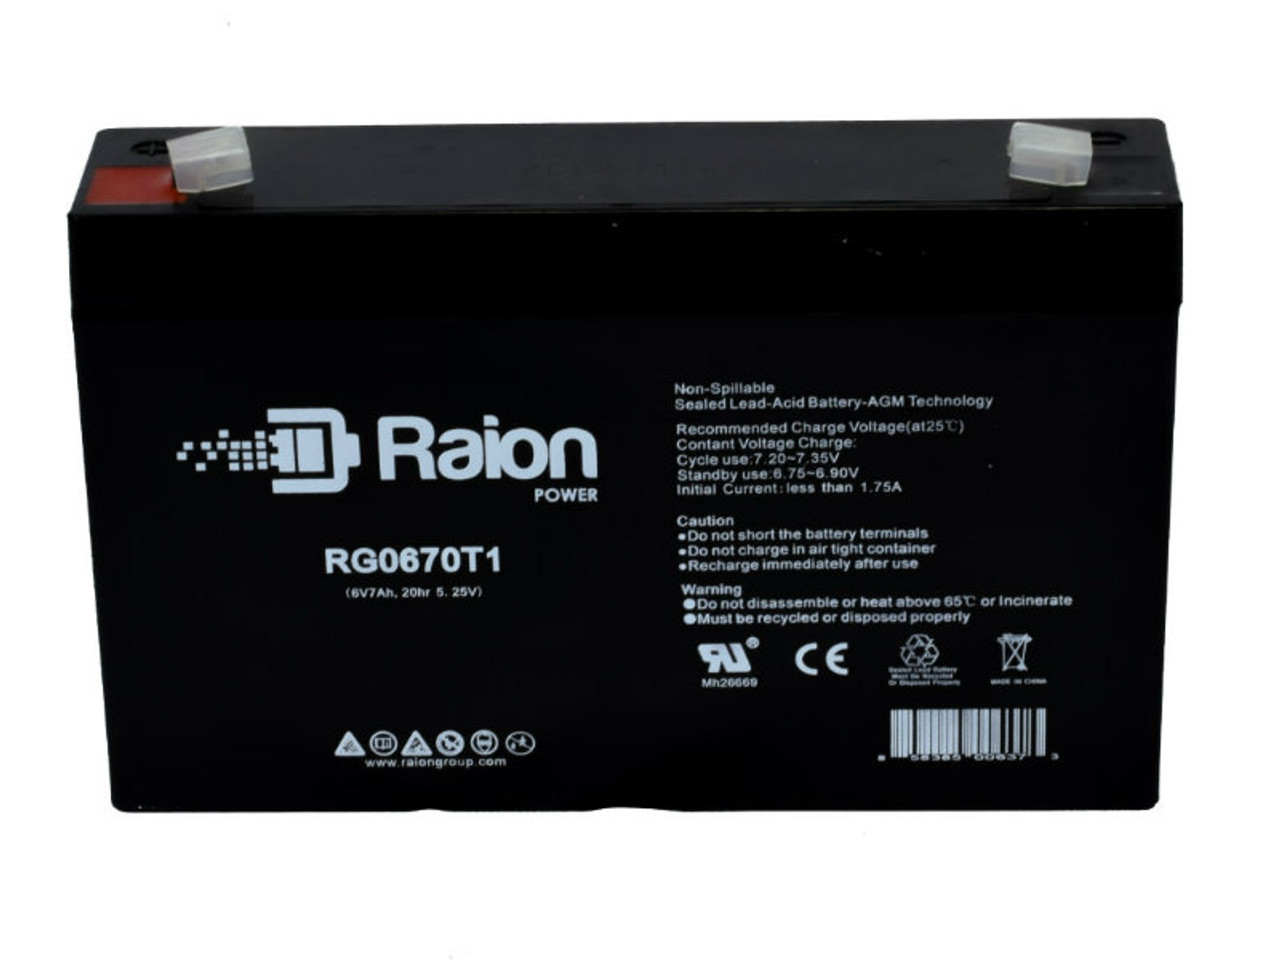 Raion Power RG0670T1 Replacement Battery Cartridge for Landport LP6-7.0